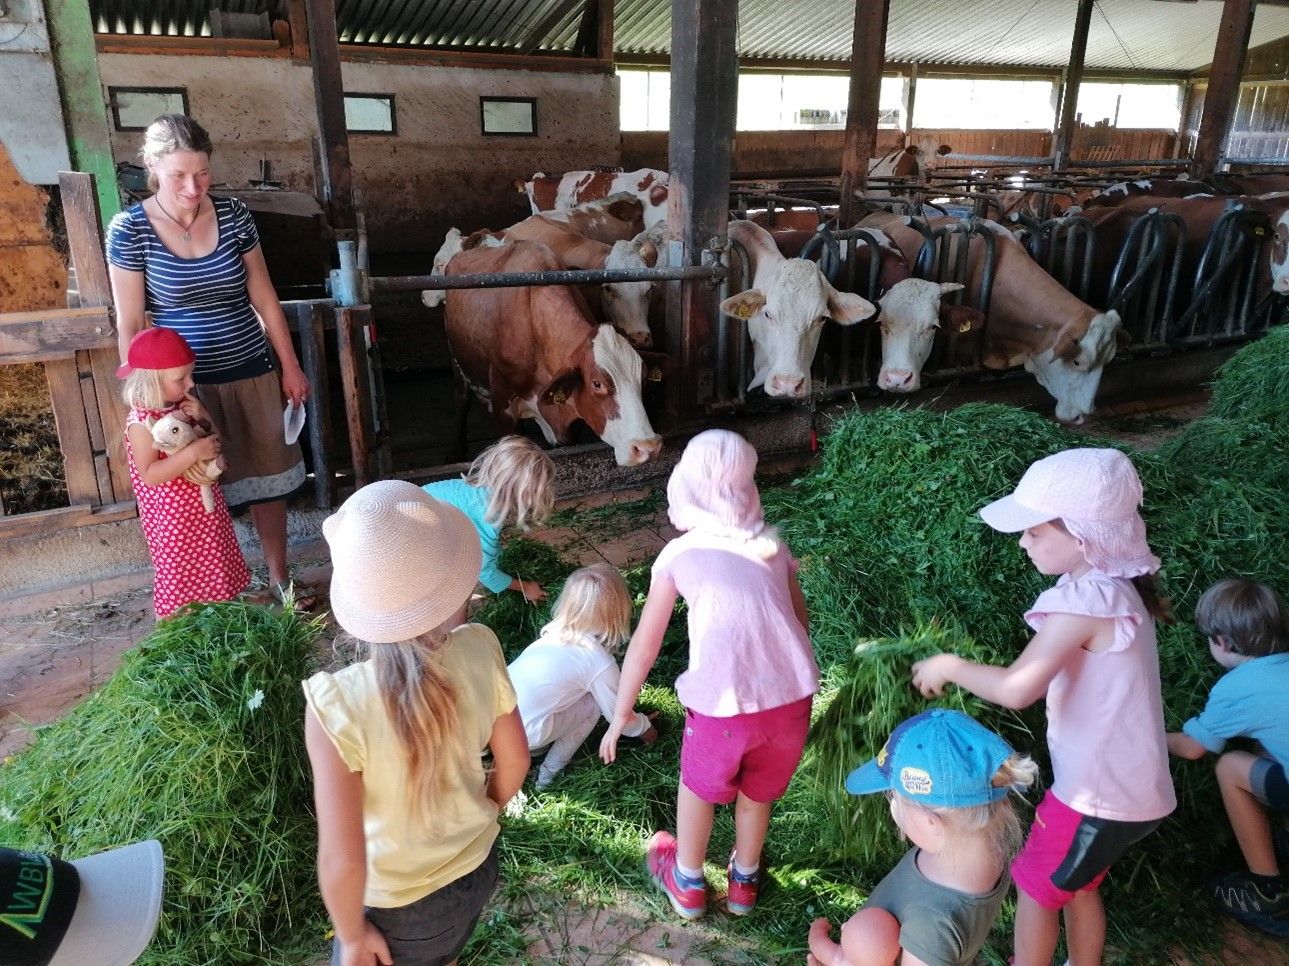 Grasverdauung bei der Kuh - einfach erklärt mittels Gras vor Kühen im Kuhstall. Foto: Dr. Juliana von Berlepsch